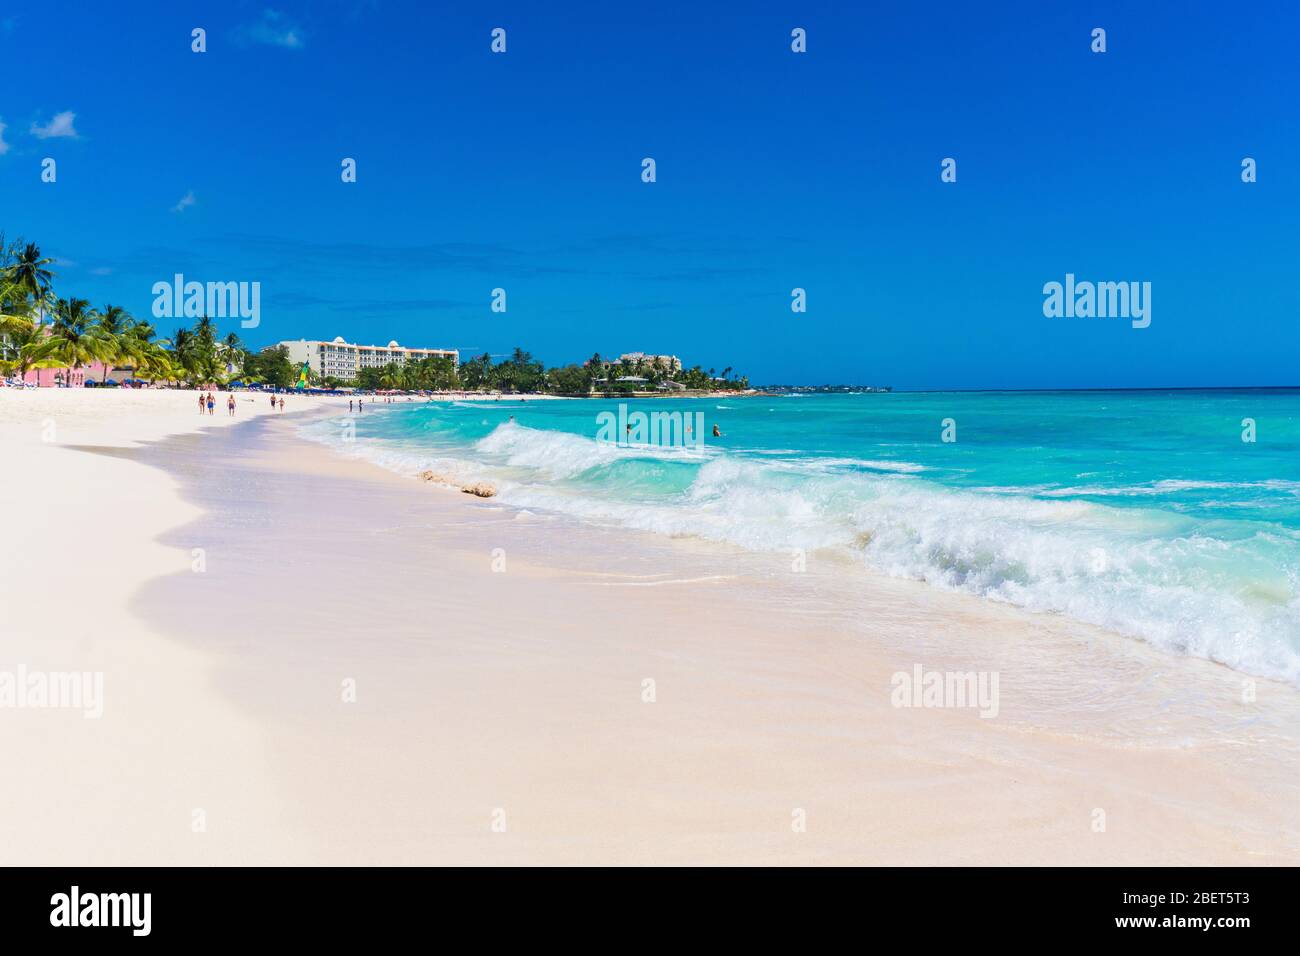 Le persone che camminano e si rilassano mentre le onde rotolano sulla spiaggia di sabbia di dover in una calda giornata di sole Foto Stock